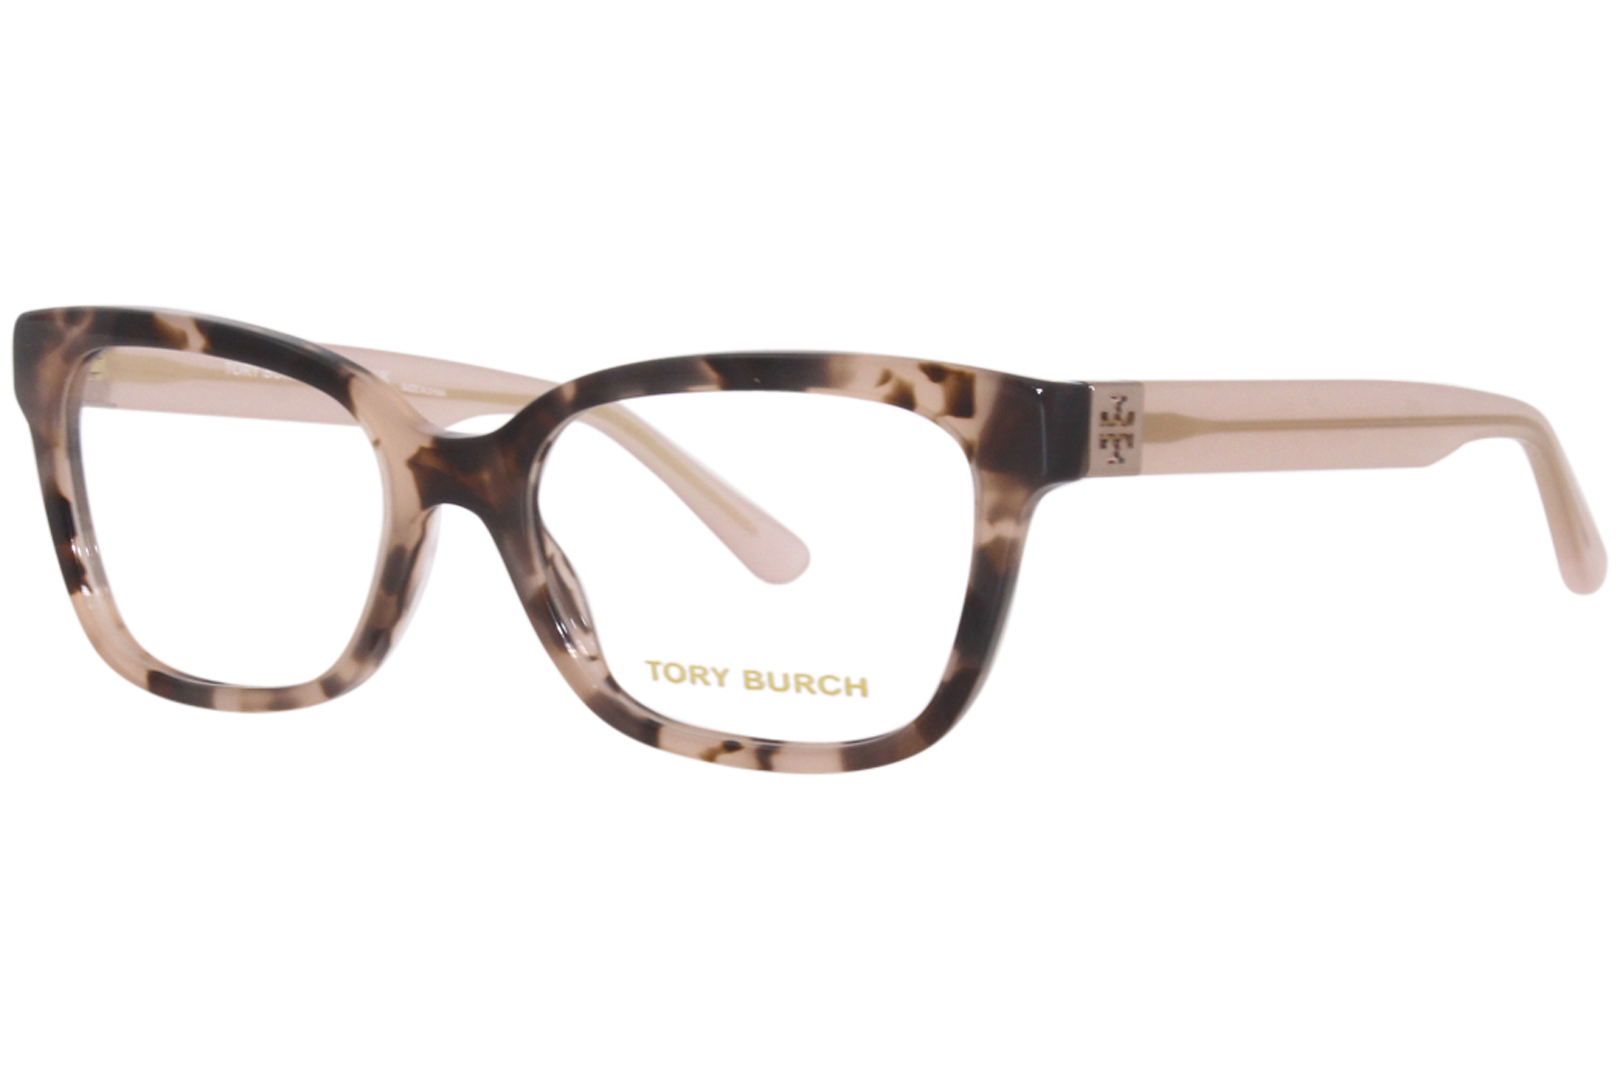 Tory Burch TY2084 1726 Eyeglasses Women's Blush Tortoise Full Rim 52-17-140  